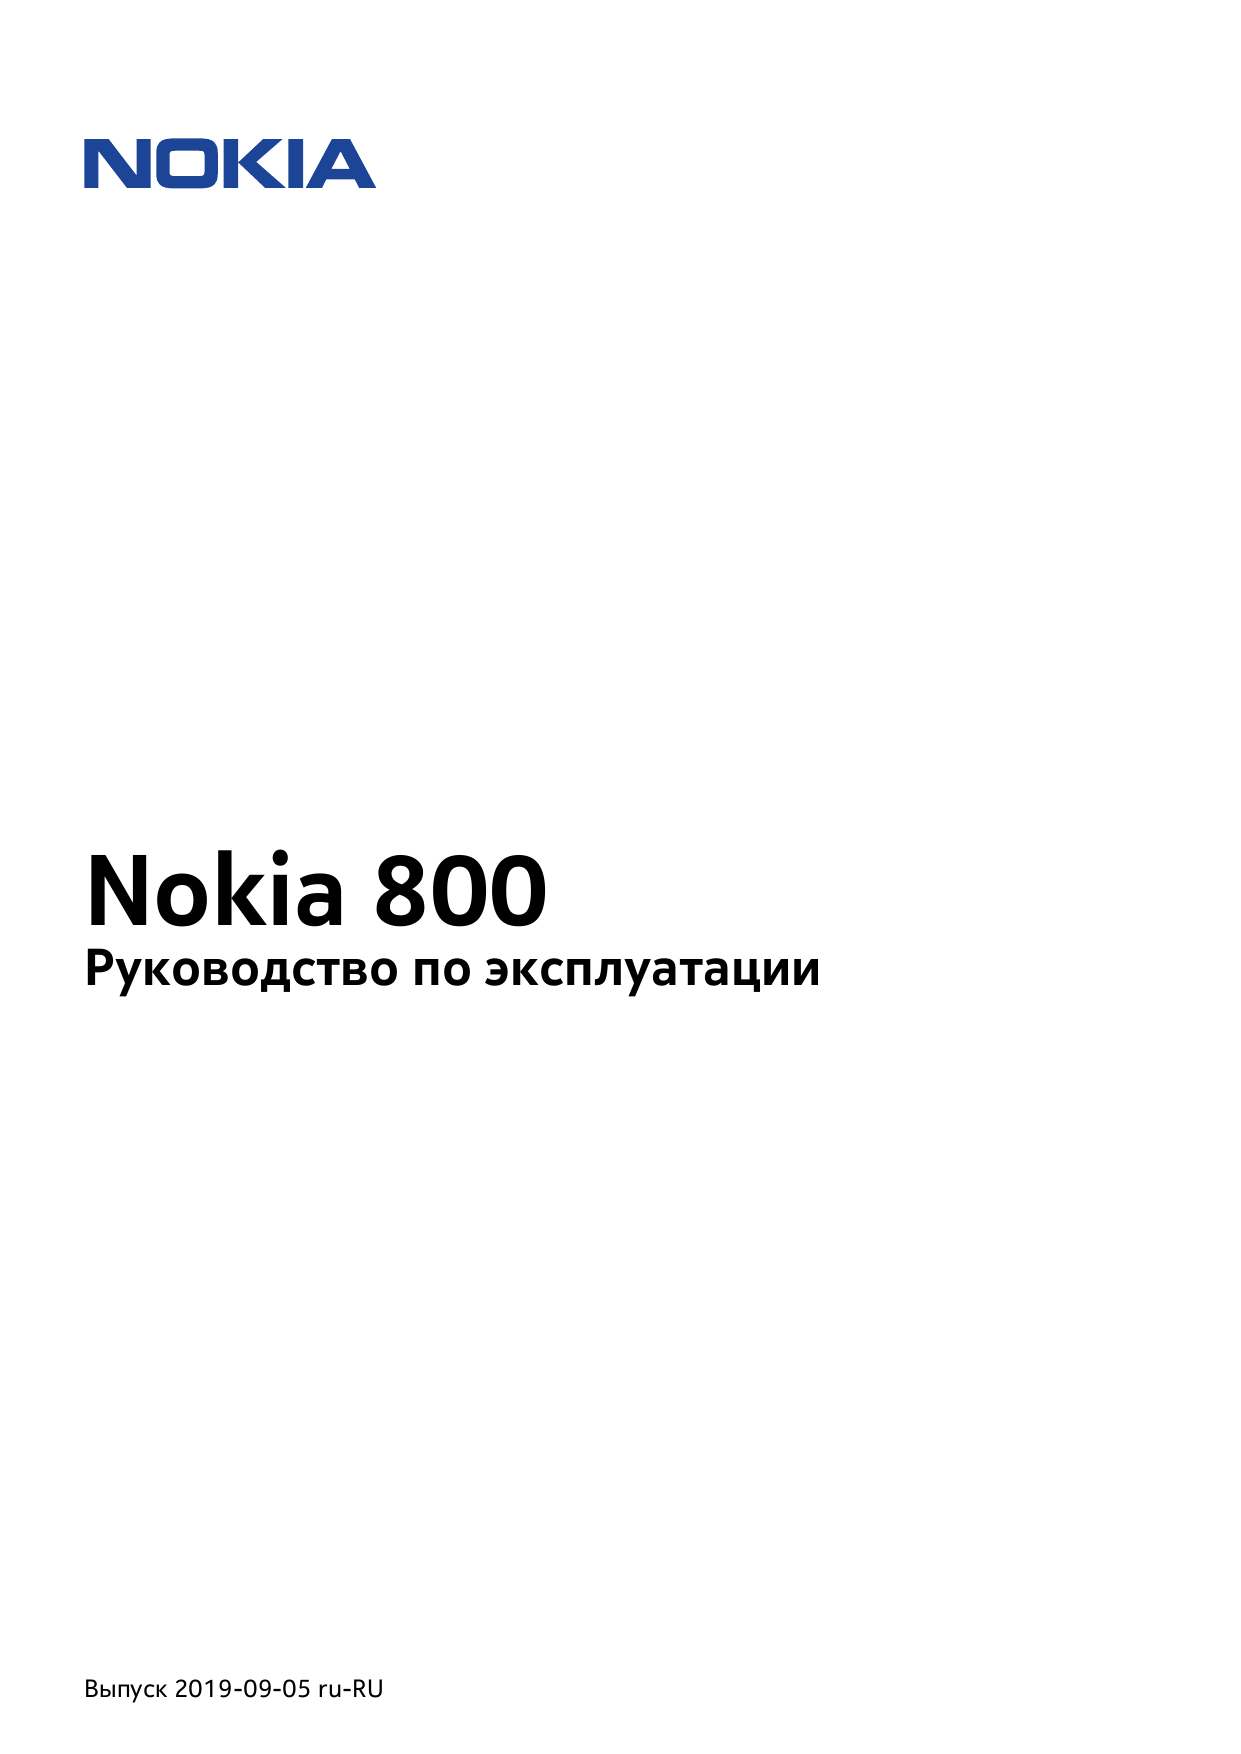 Телефоны нокиа инструкция. Nokia 2720 инструкция на русском. Nokia 106 инструкция на русском. Нокиа 2720 обозначения на дисплее. 925033380-03 Service manual.